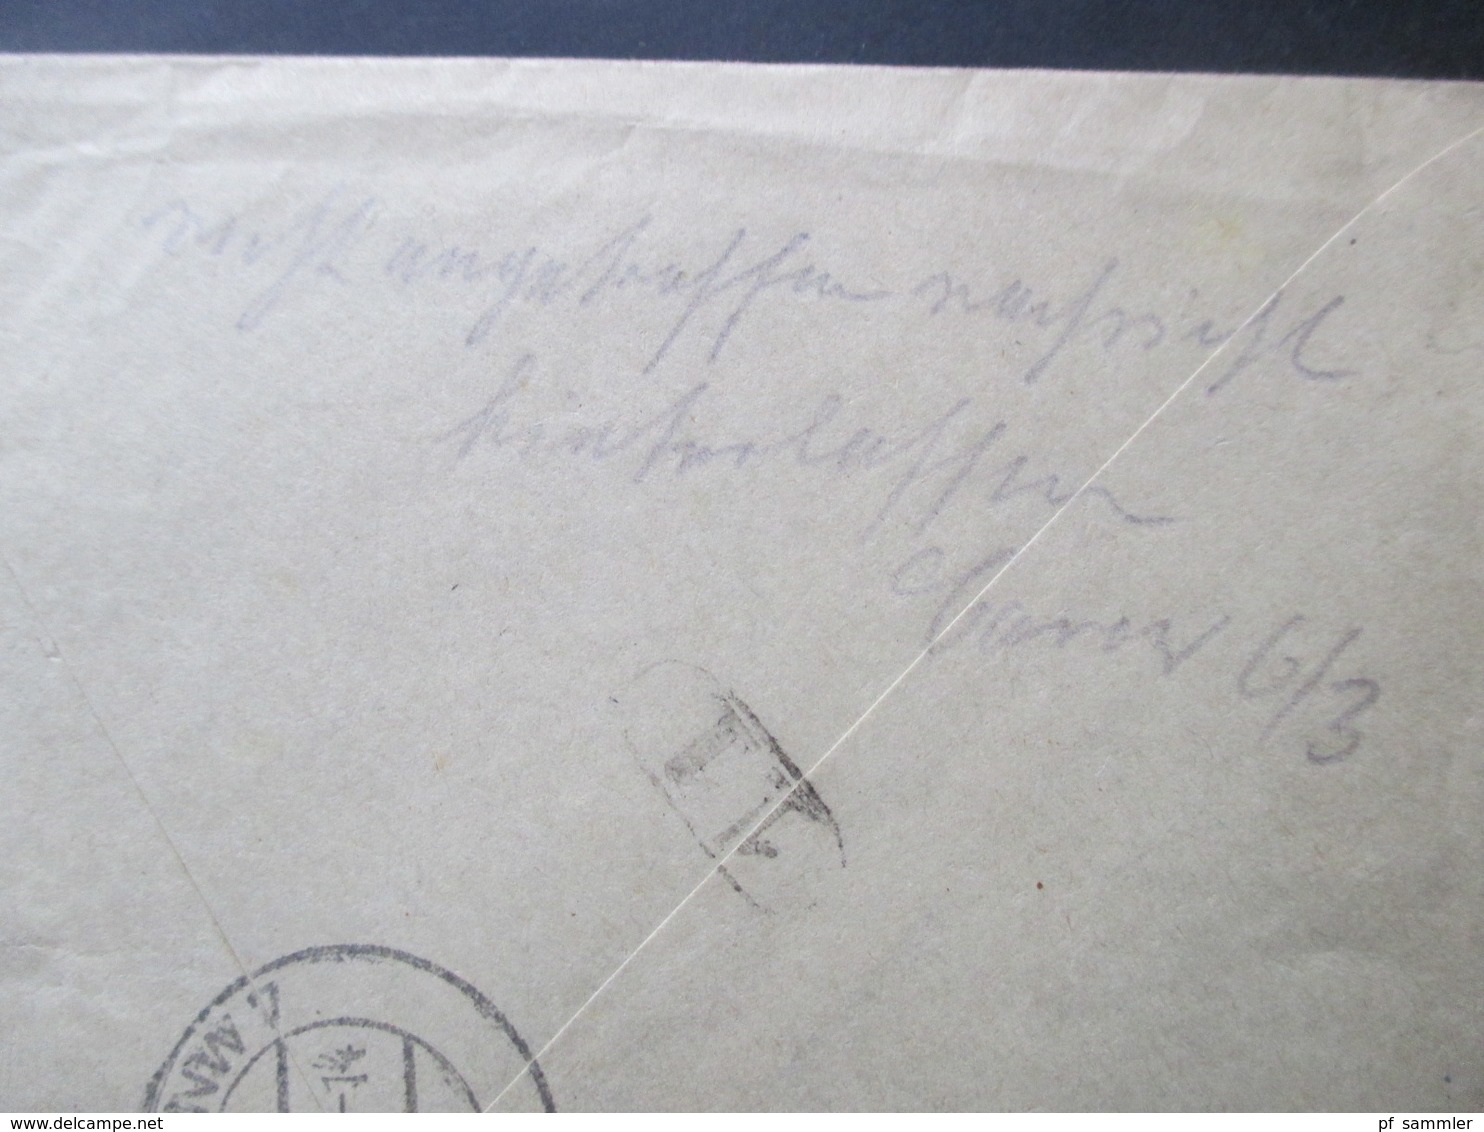 Böhmen und Mähren 1942 MiF Einschreiben / durch Eilboten Spesne zweisprachiger R-Zettel Budweis 1 Ceske Budejovice 1